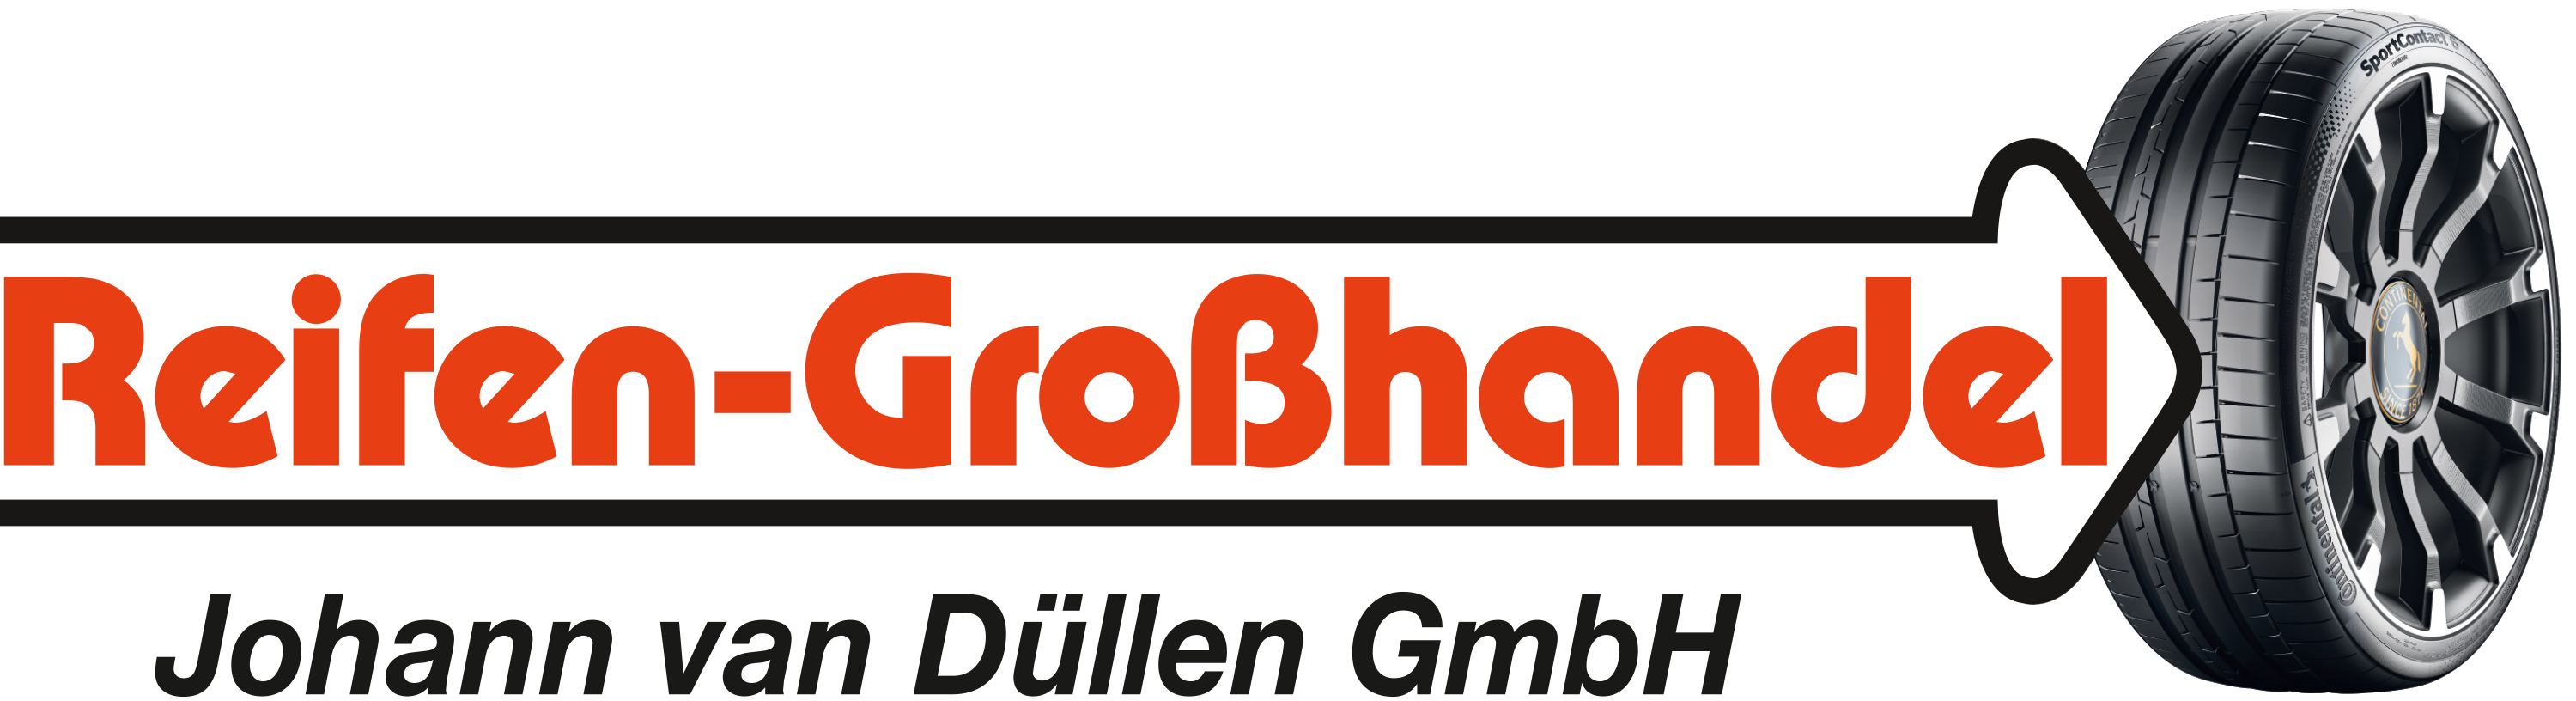 Reifen-Großhandel Johann van Düllen Logo